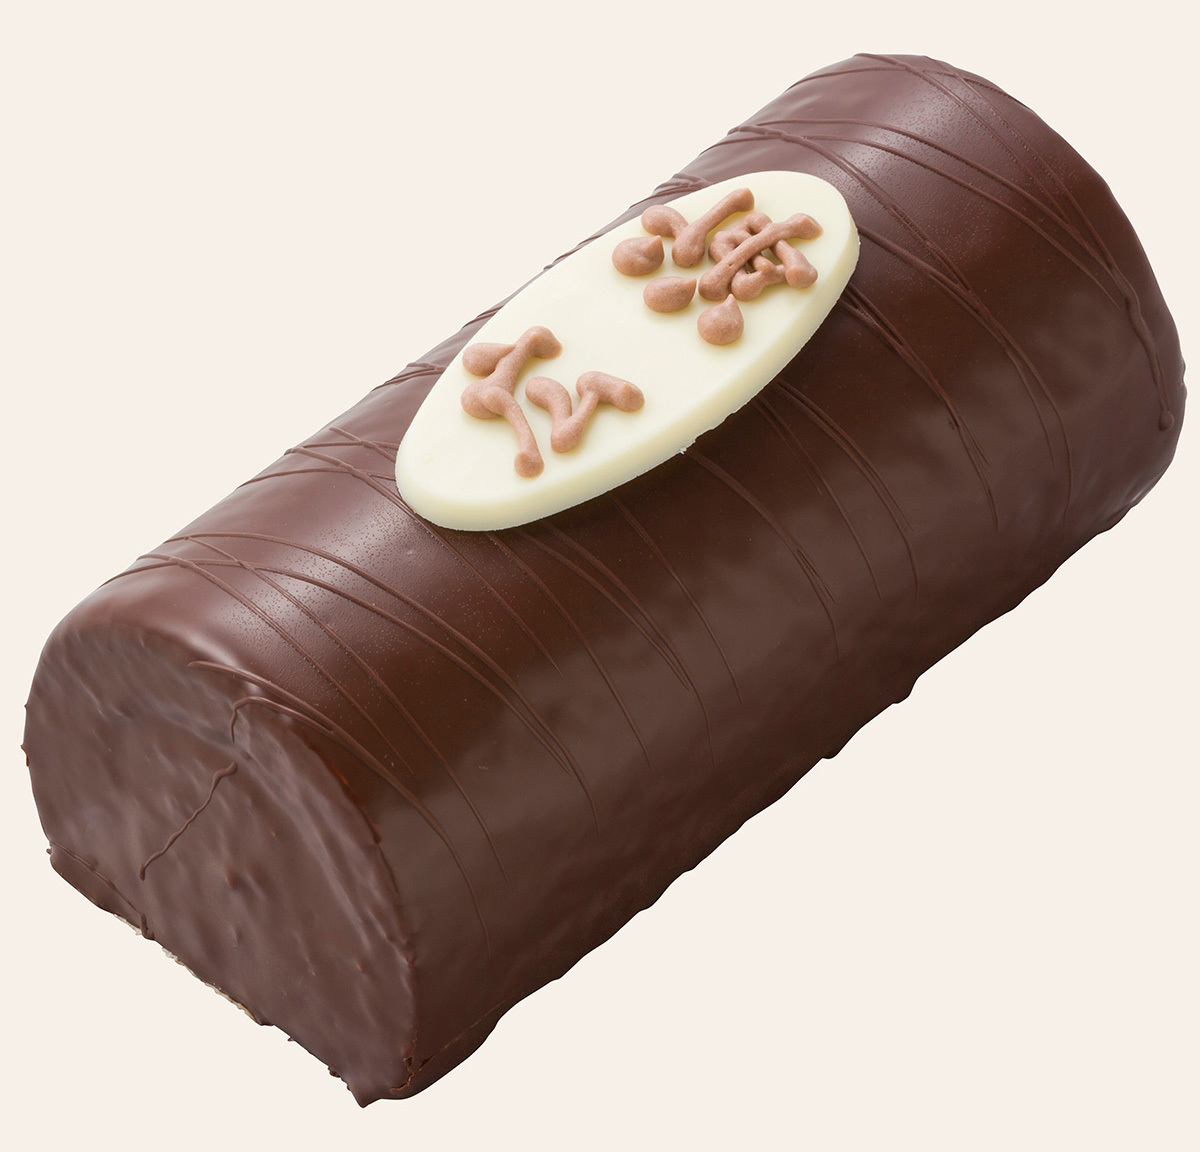 名入れチョコロールのイメージ画像